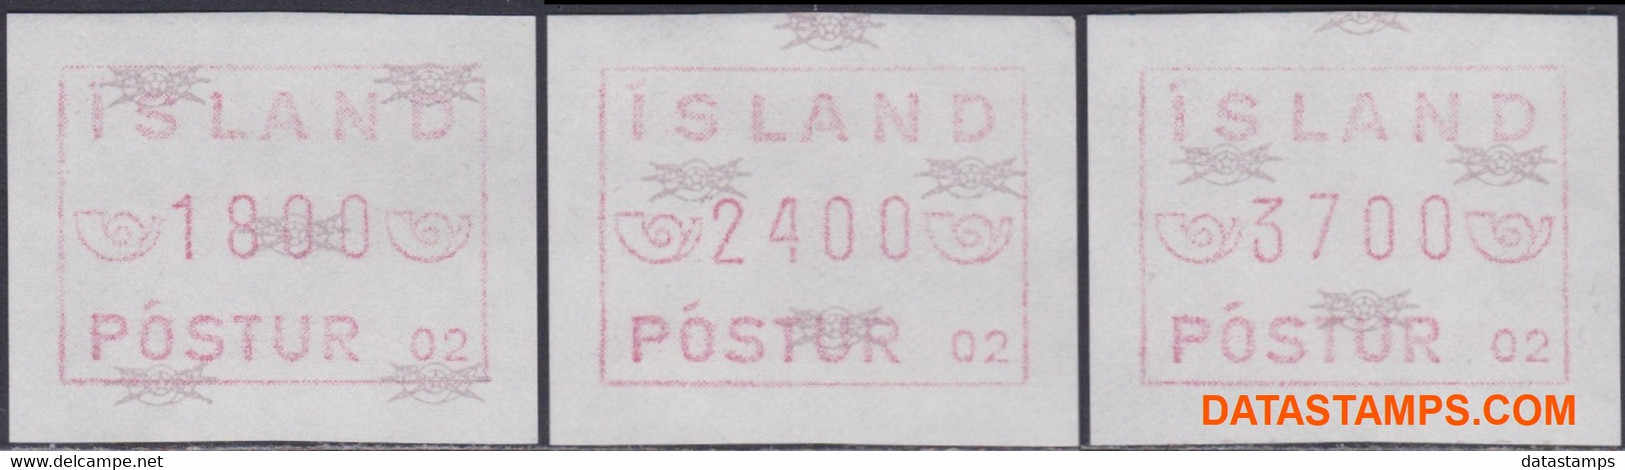 Ijsland 1988 - Mi:autom 2 Set, Yv:TD 2 Set, Machine Stamp - XX - Machine Stamp - Frankeervignetten (Frama)